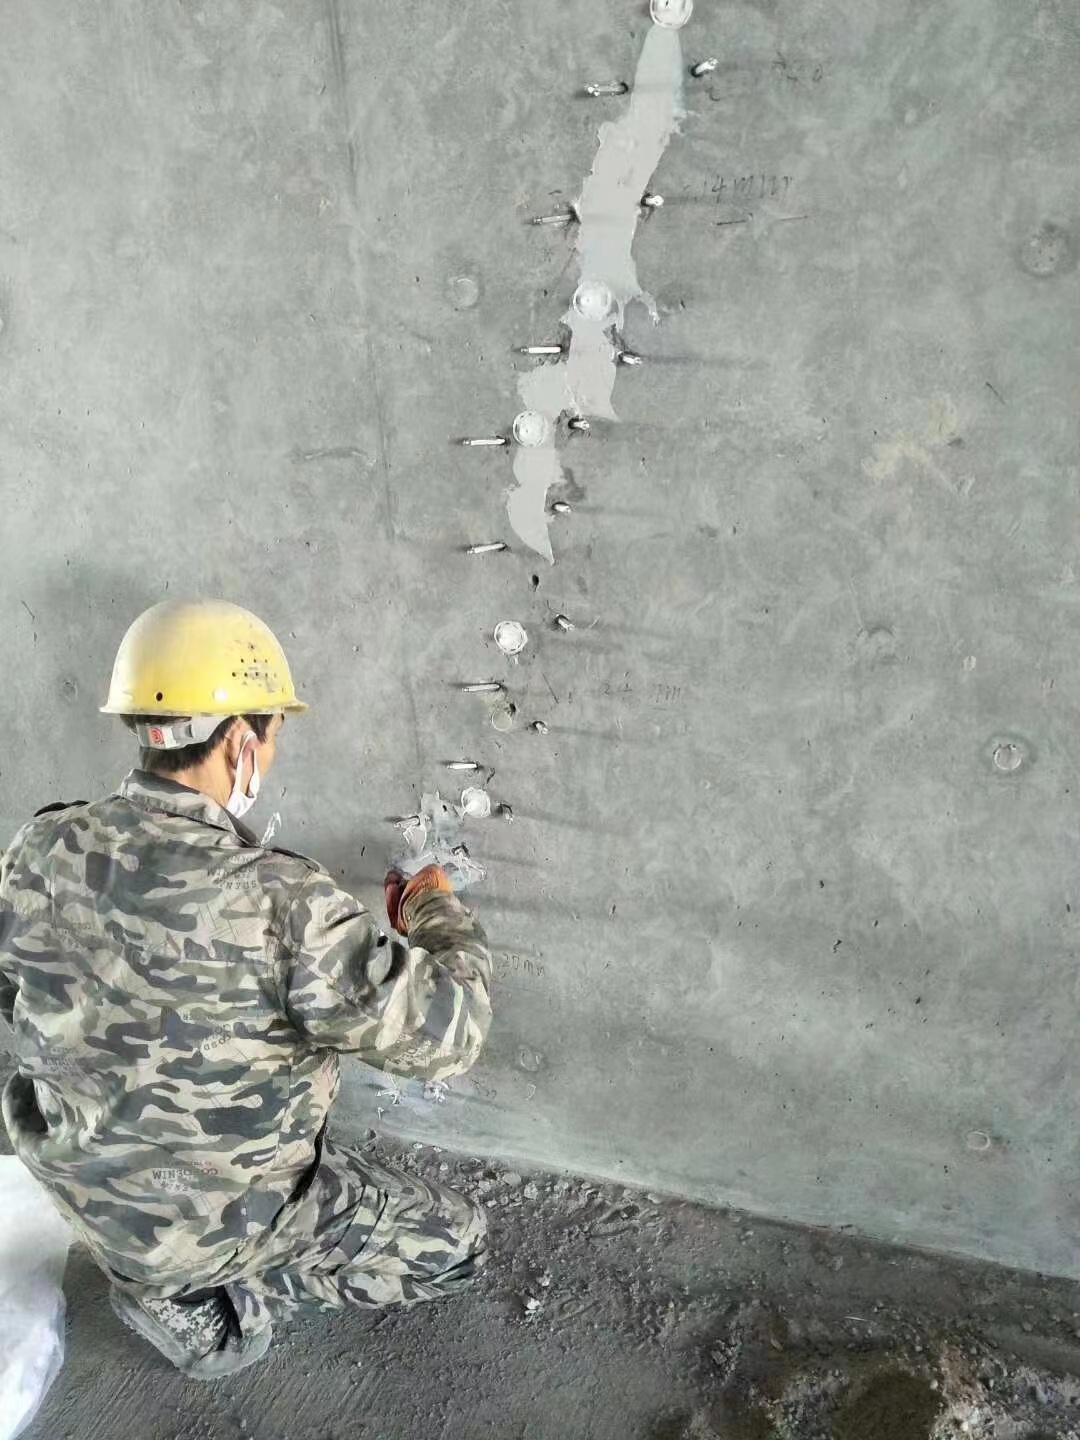 晋城混凝土楼板裂缝加固施工的方案